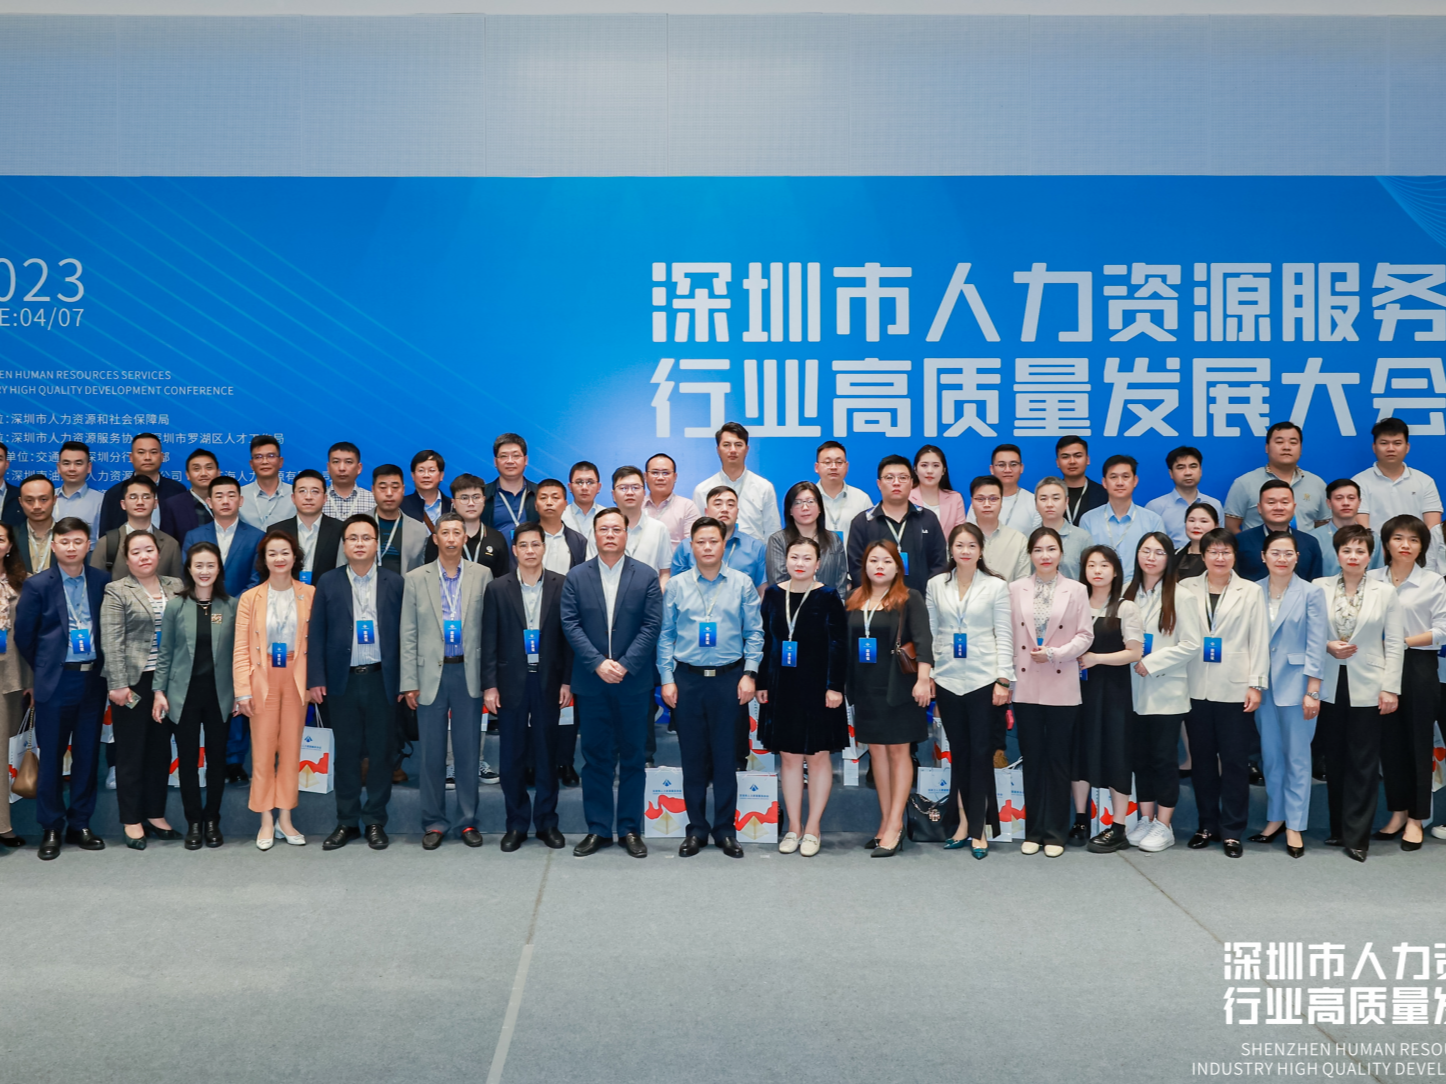 深圳市人力资源服务行业高质量发展大会举行